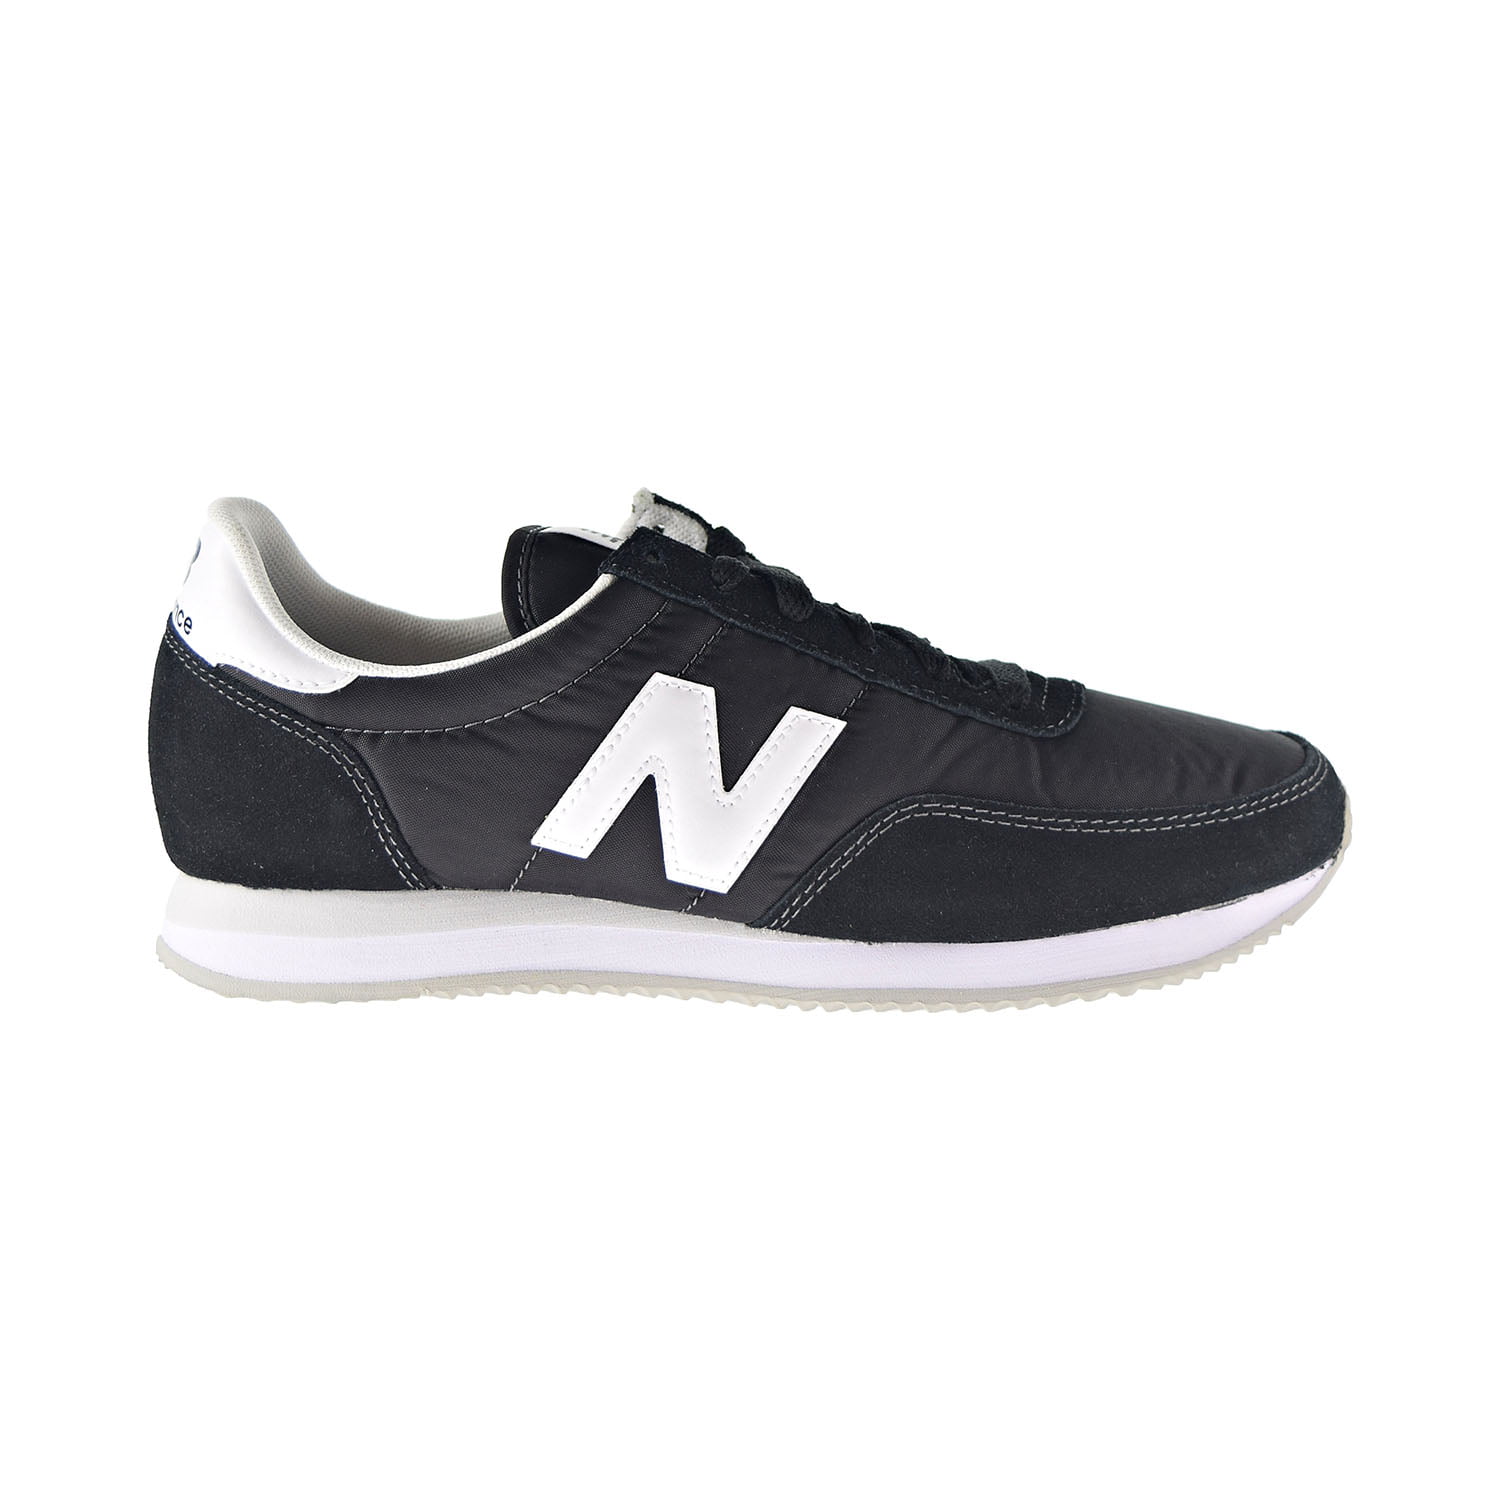 New Balance Classics 720 V1 Men's Shoes Black/White ul720-aa لوسيل نيغان